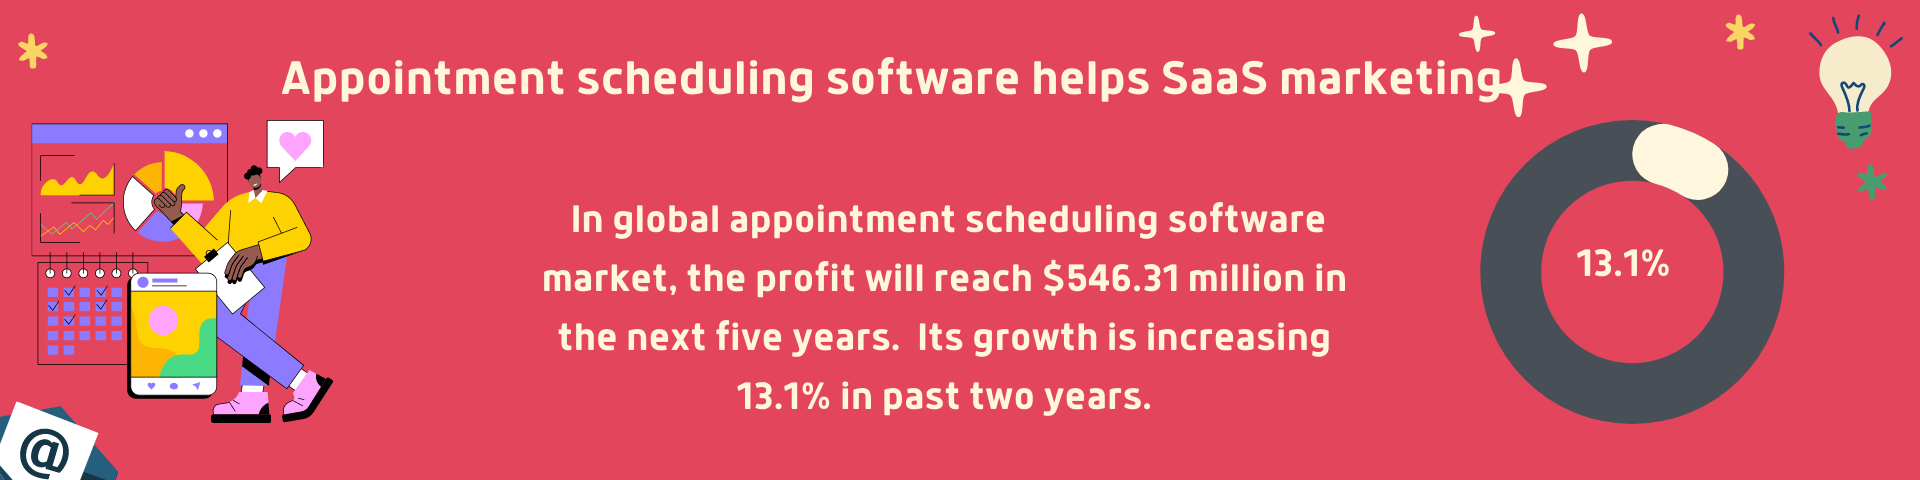 SaaS scheduling software helps SaaS marketing